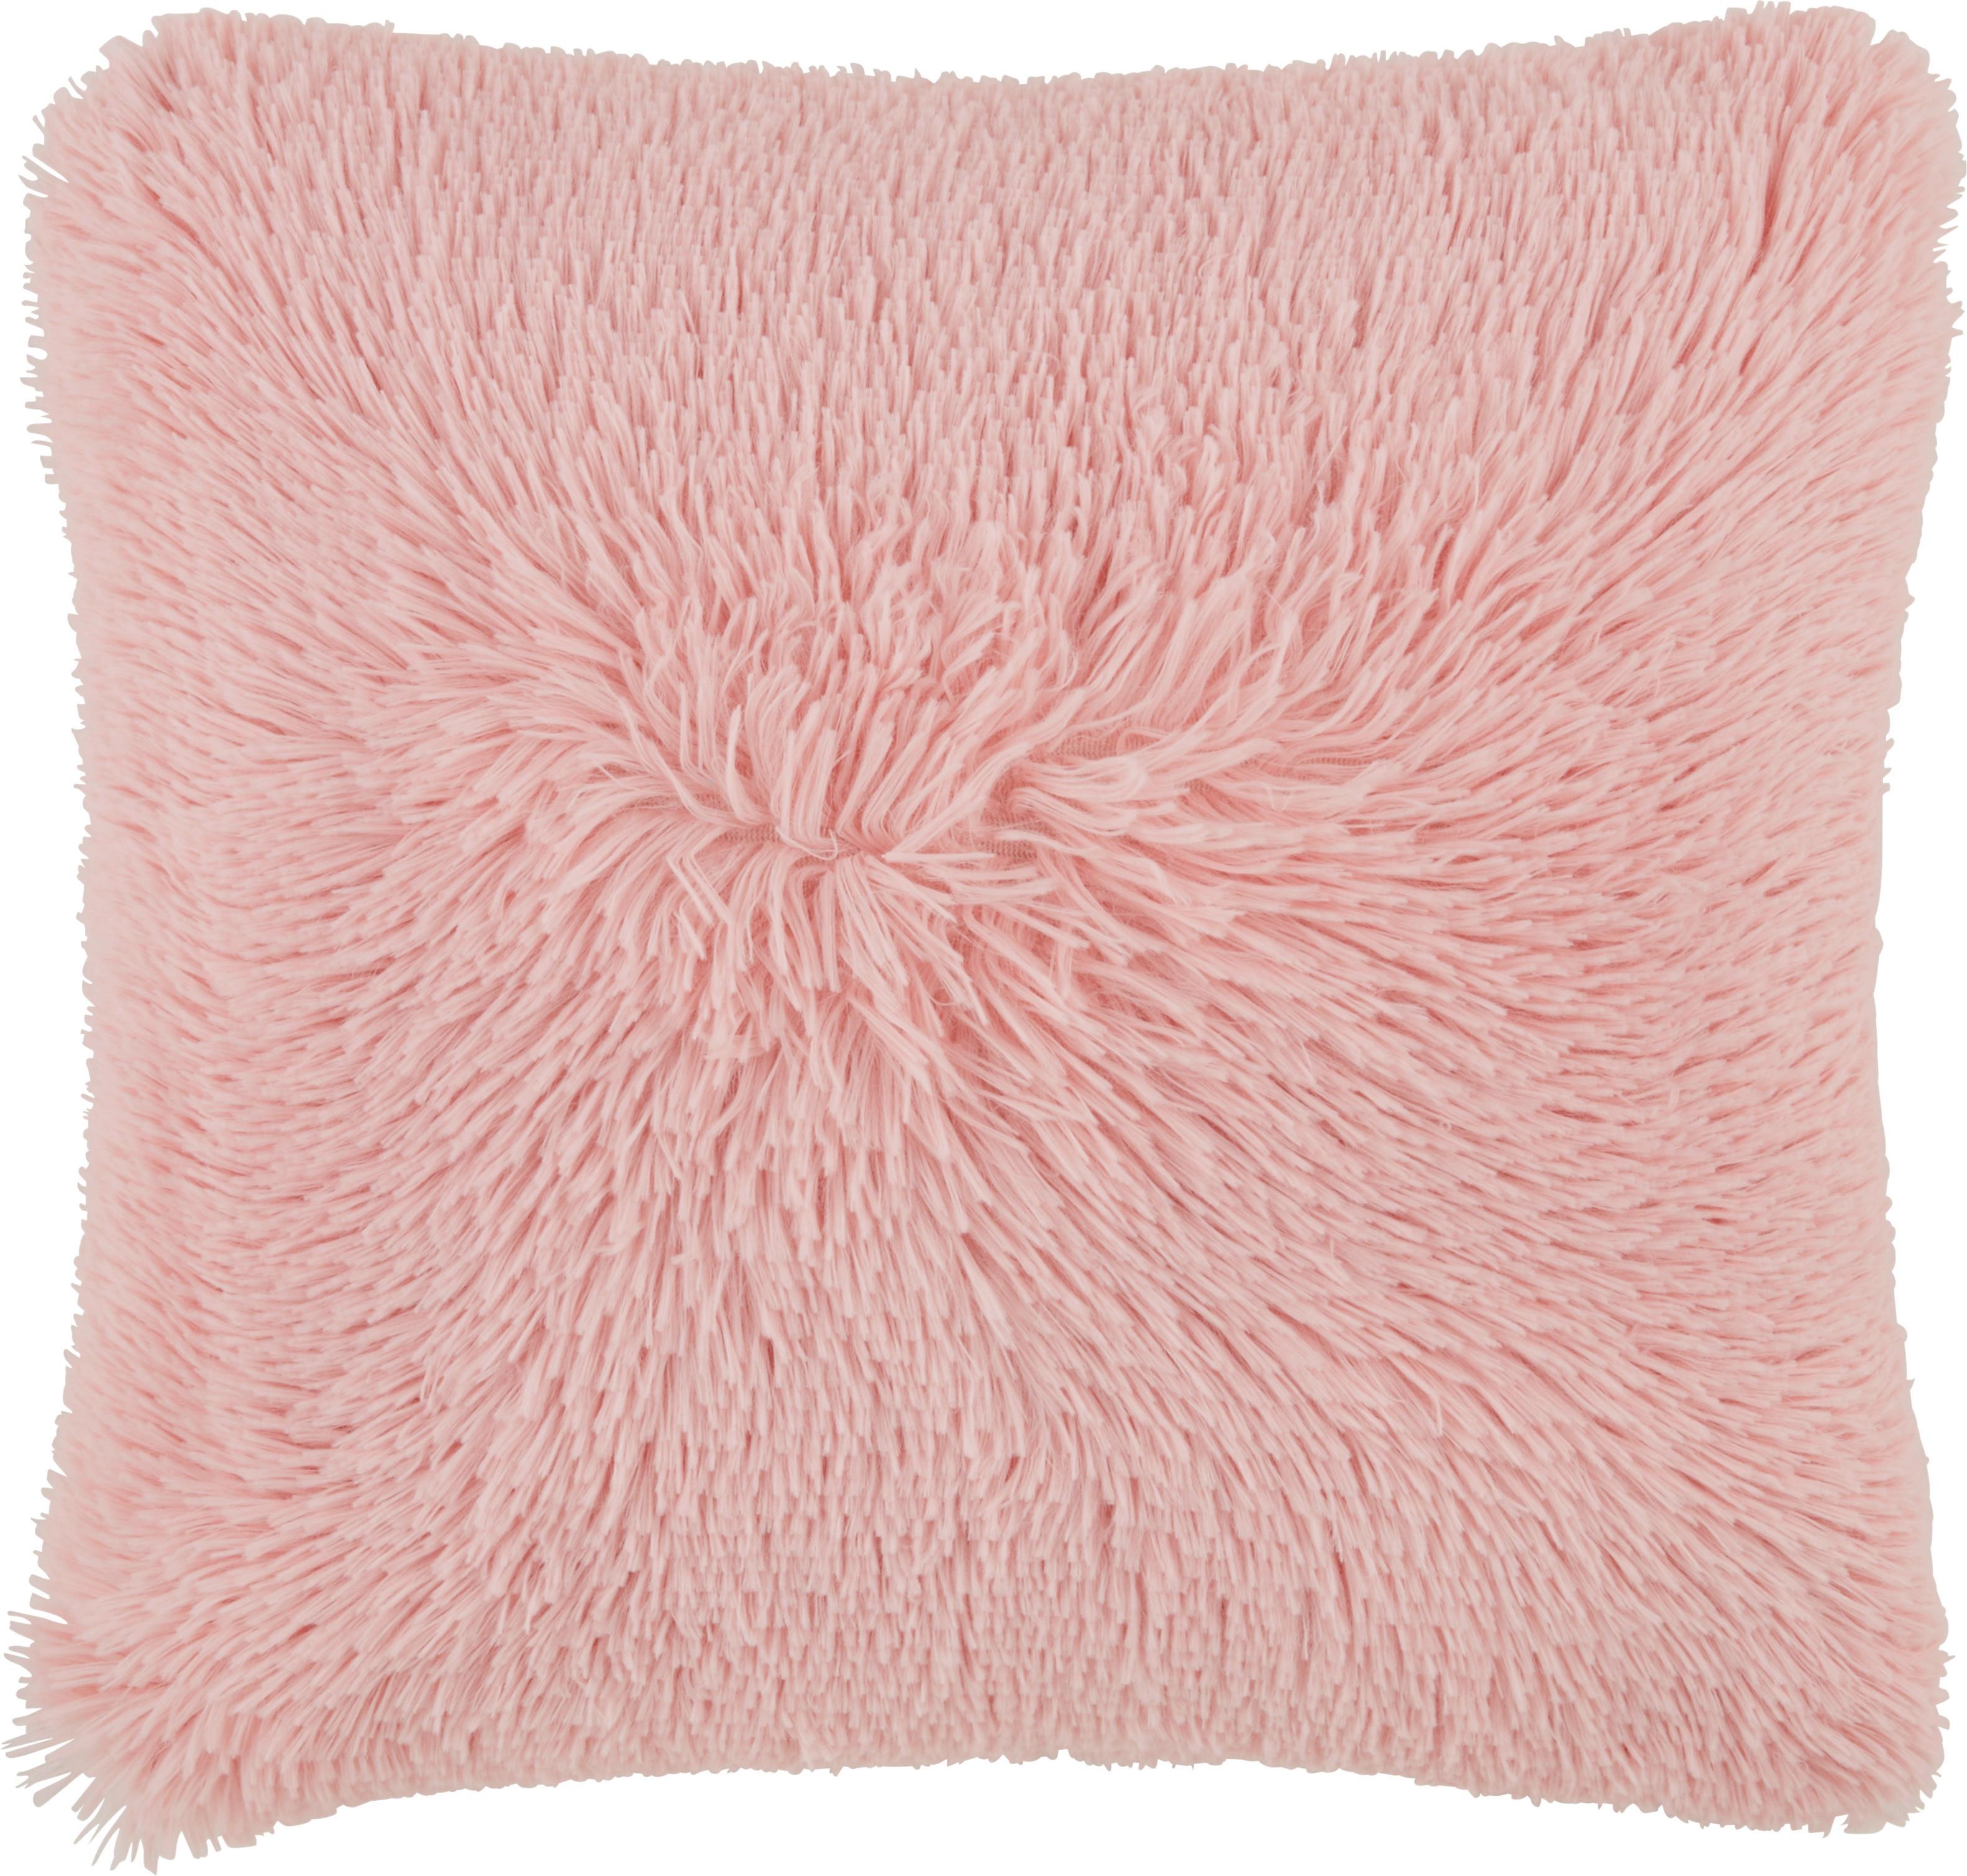 Zierkissen Fluffy Rosa ca. 45x45cm - Rosa, Textil (45/45cm) - Modern Living